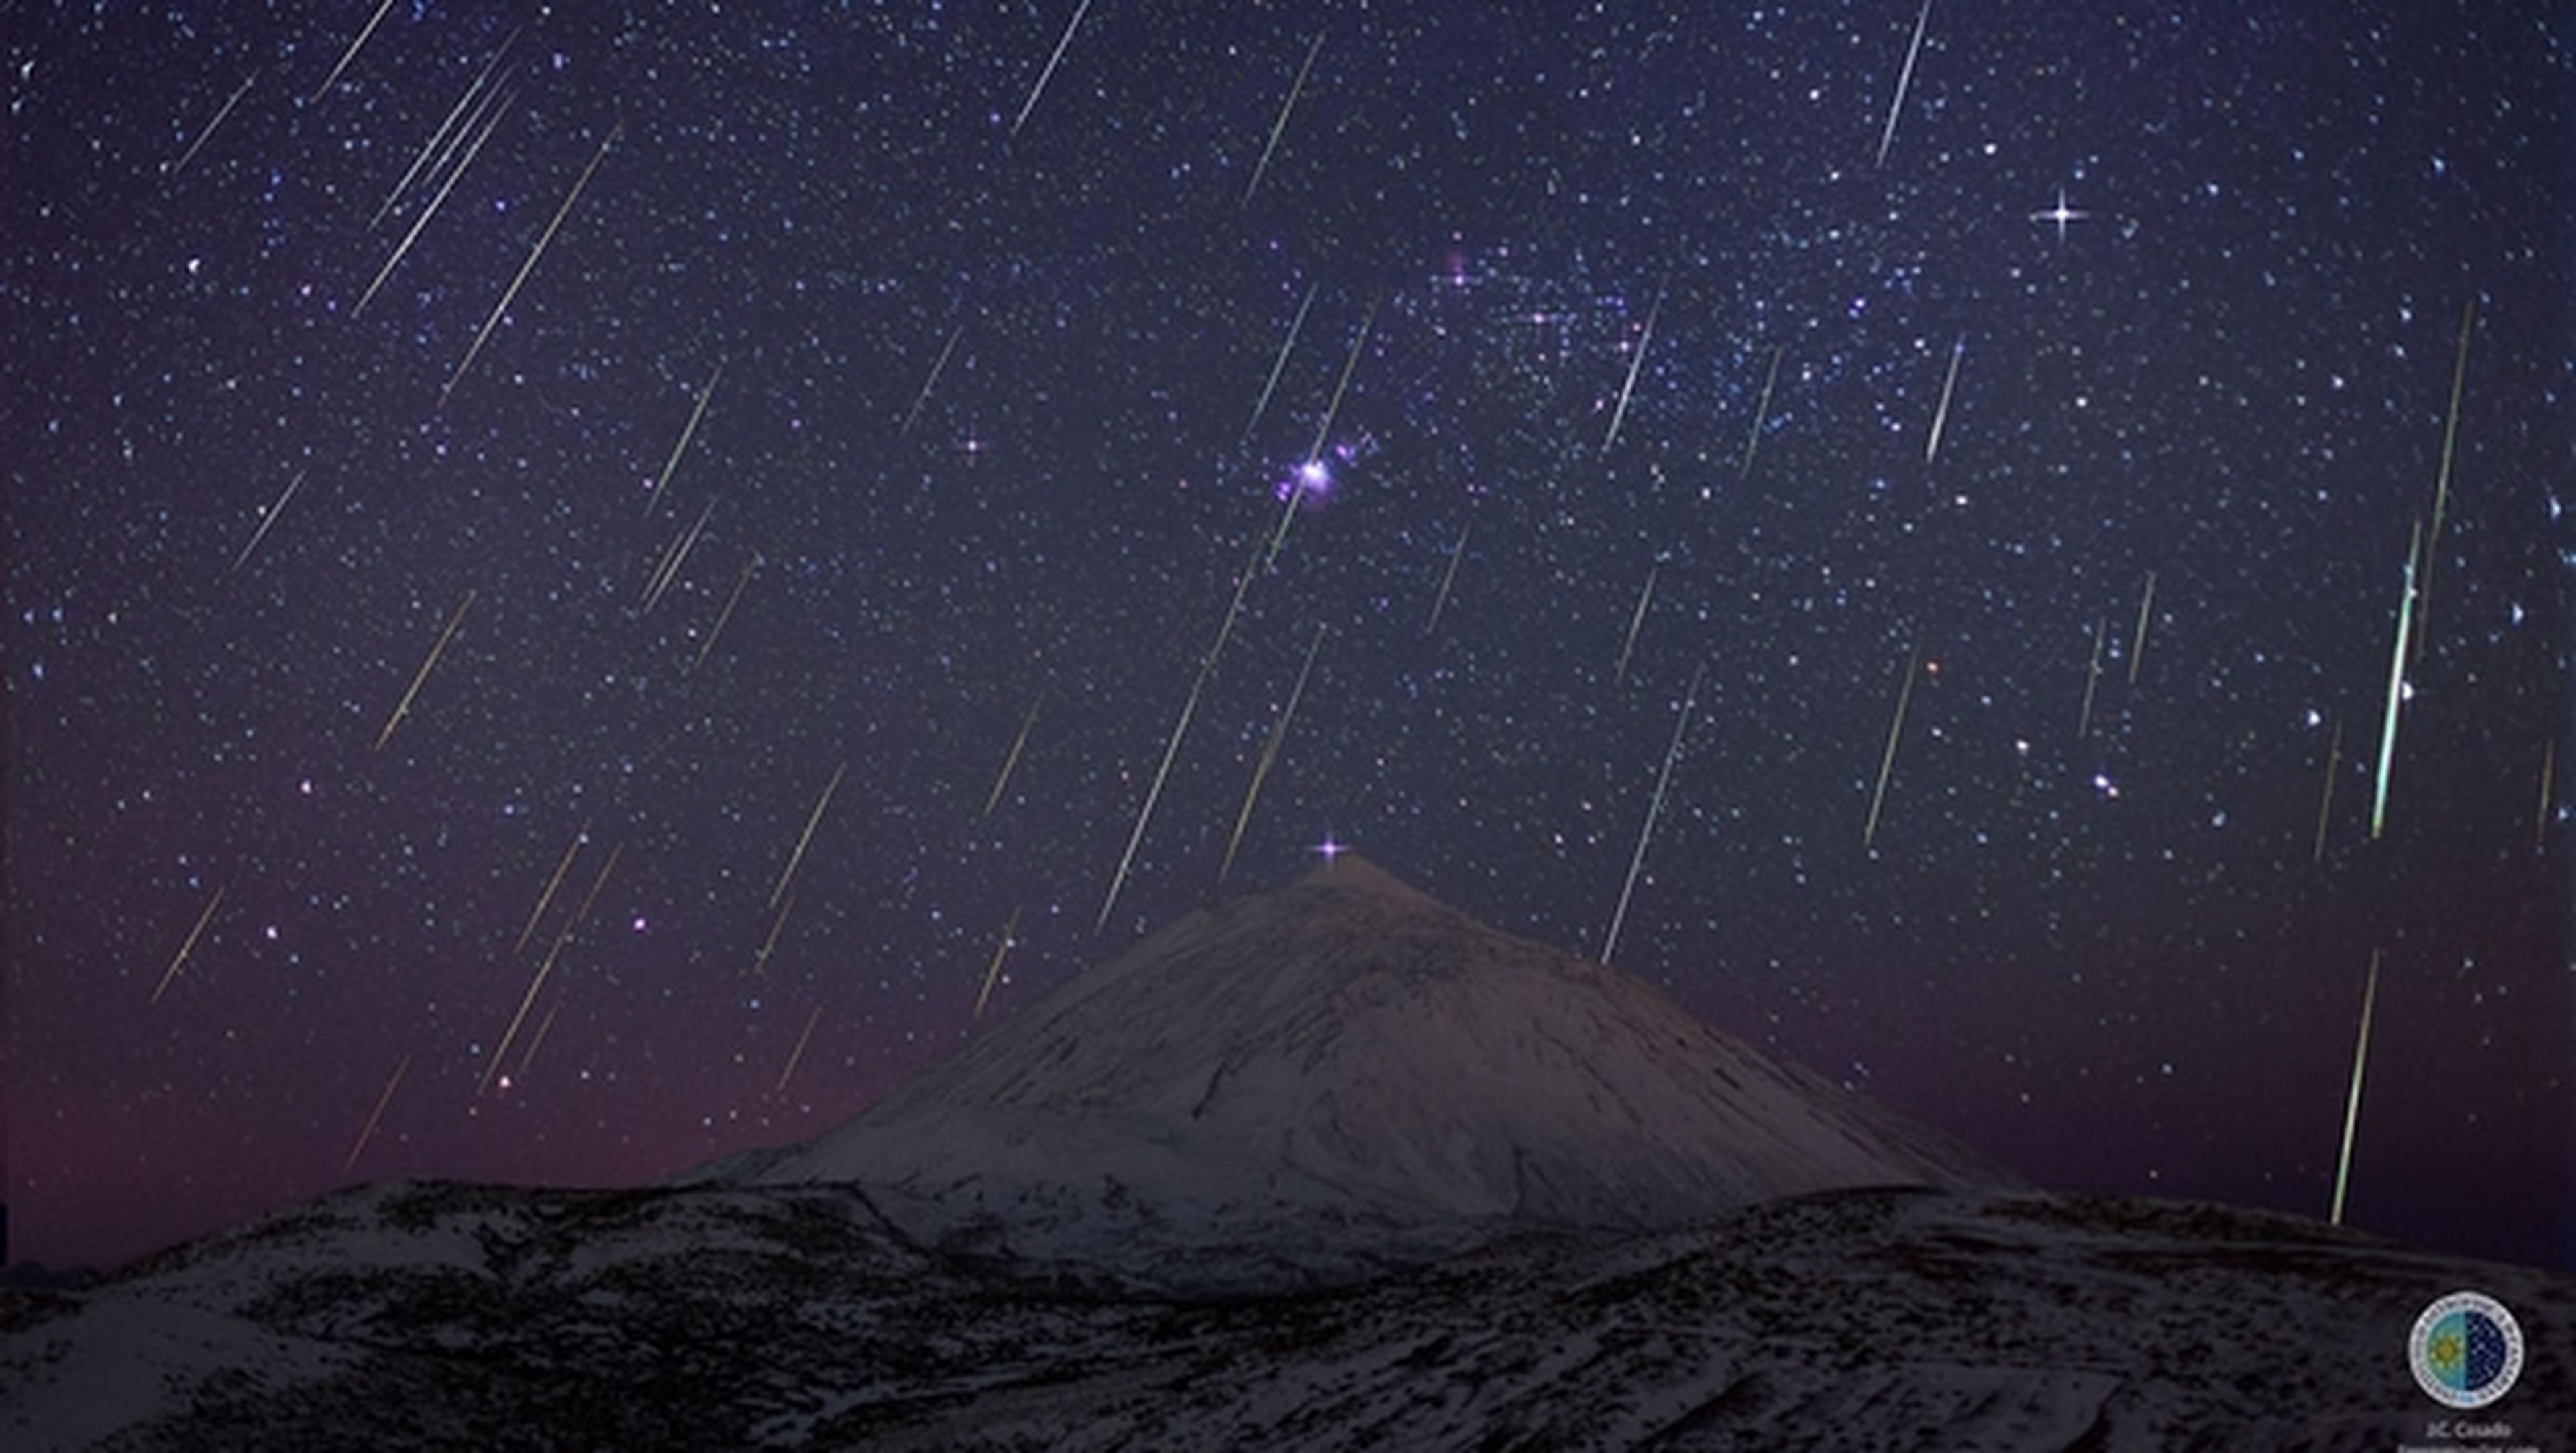 Temporada baja de Táuridas este año. ¿Has visto alguna? También caen meteoritos en Japón.